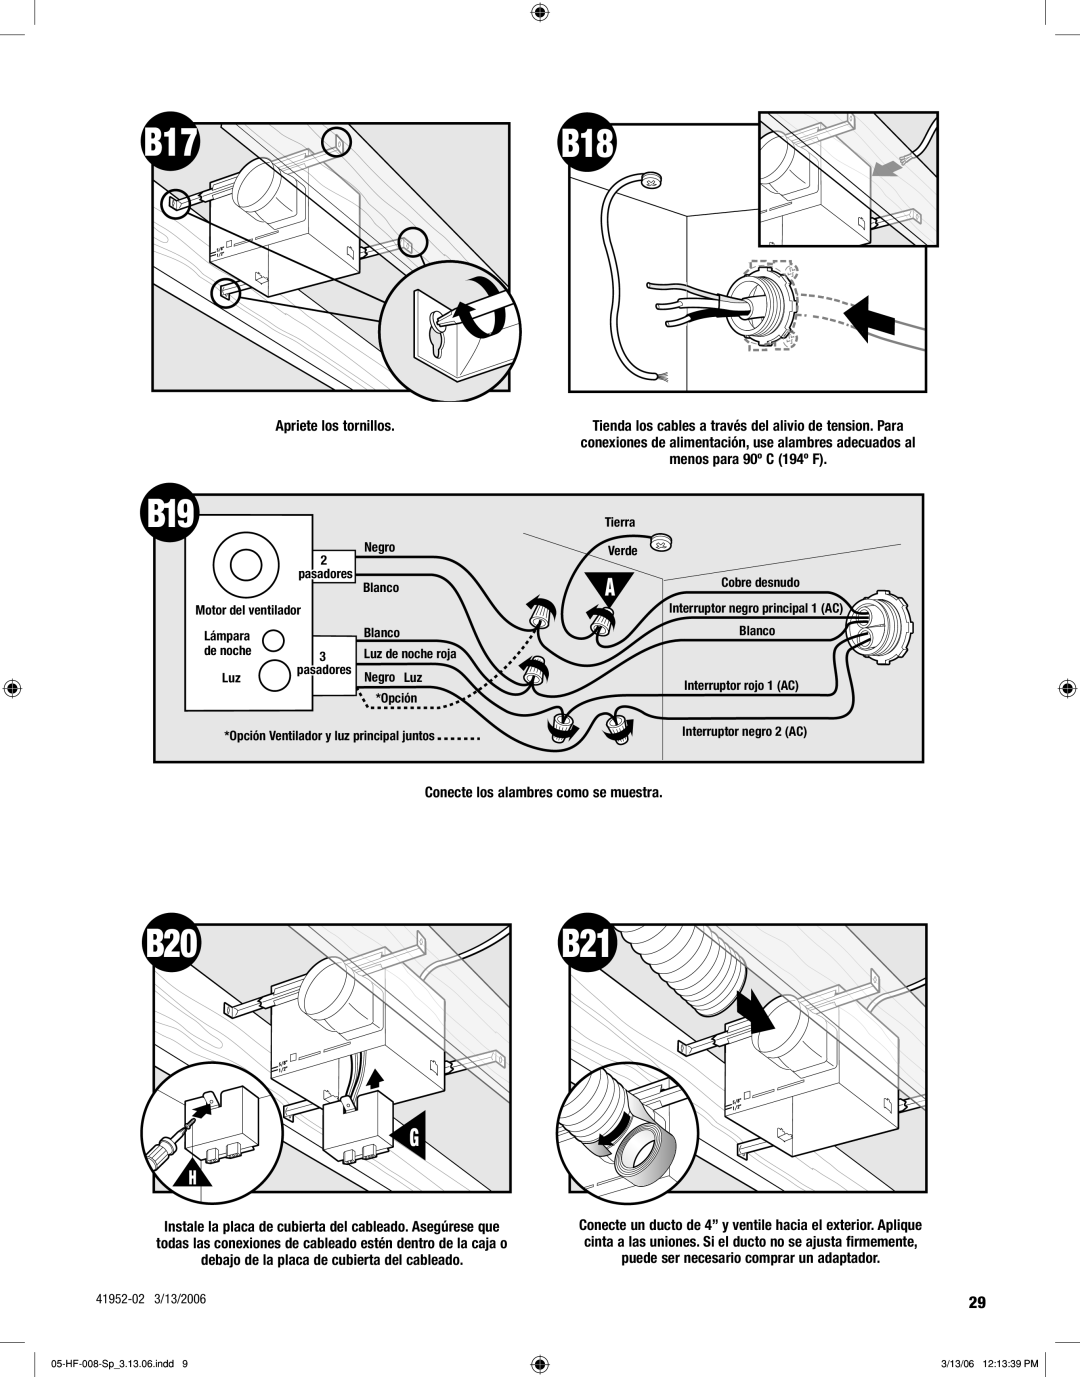 Hunter,R.F 83005 manual Apriete los tornillos, Conecte los alambres como se muestra 